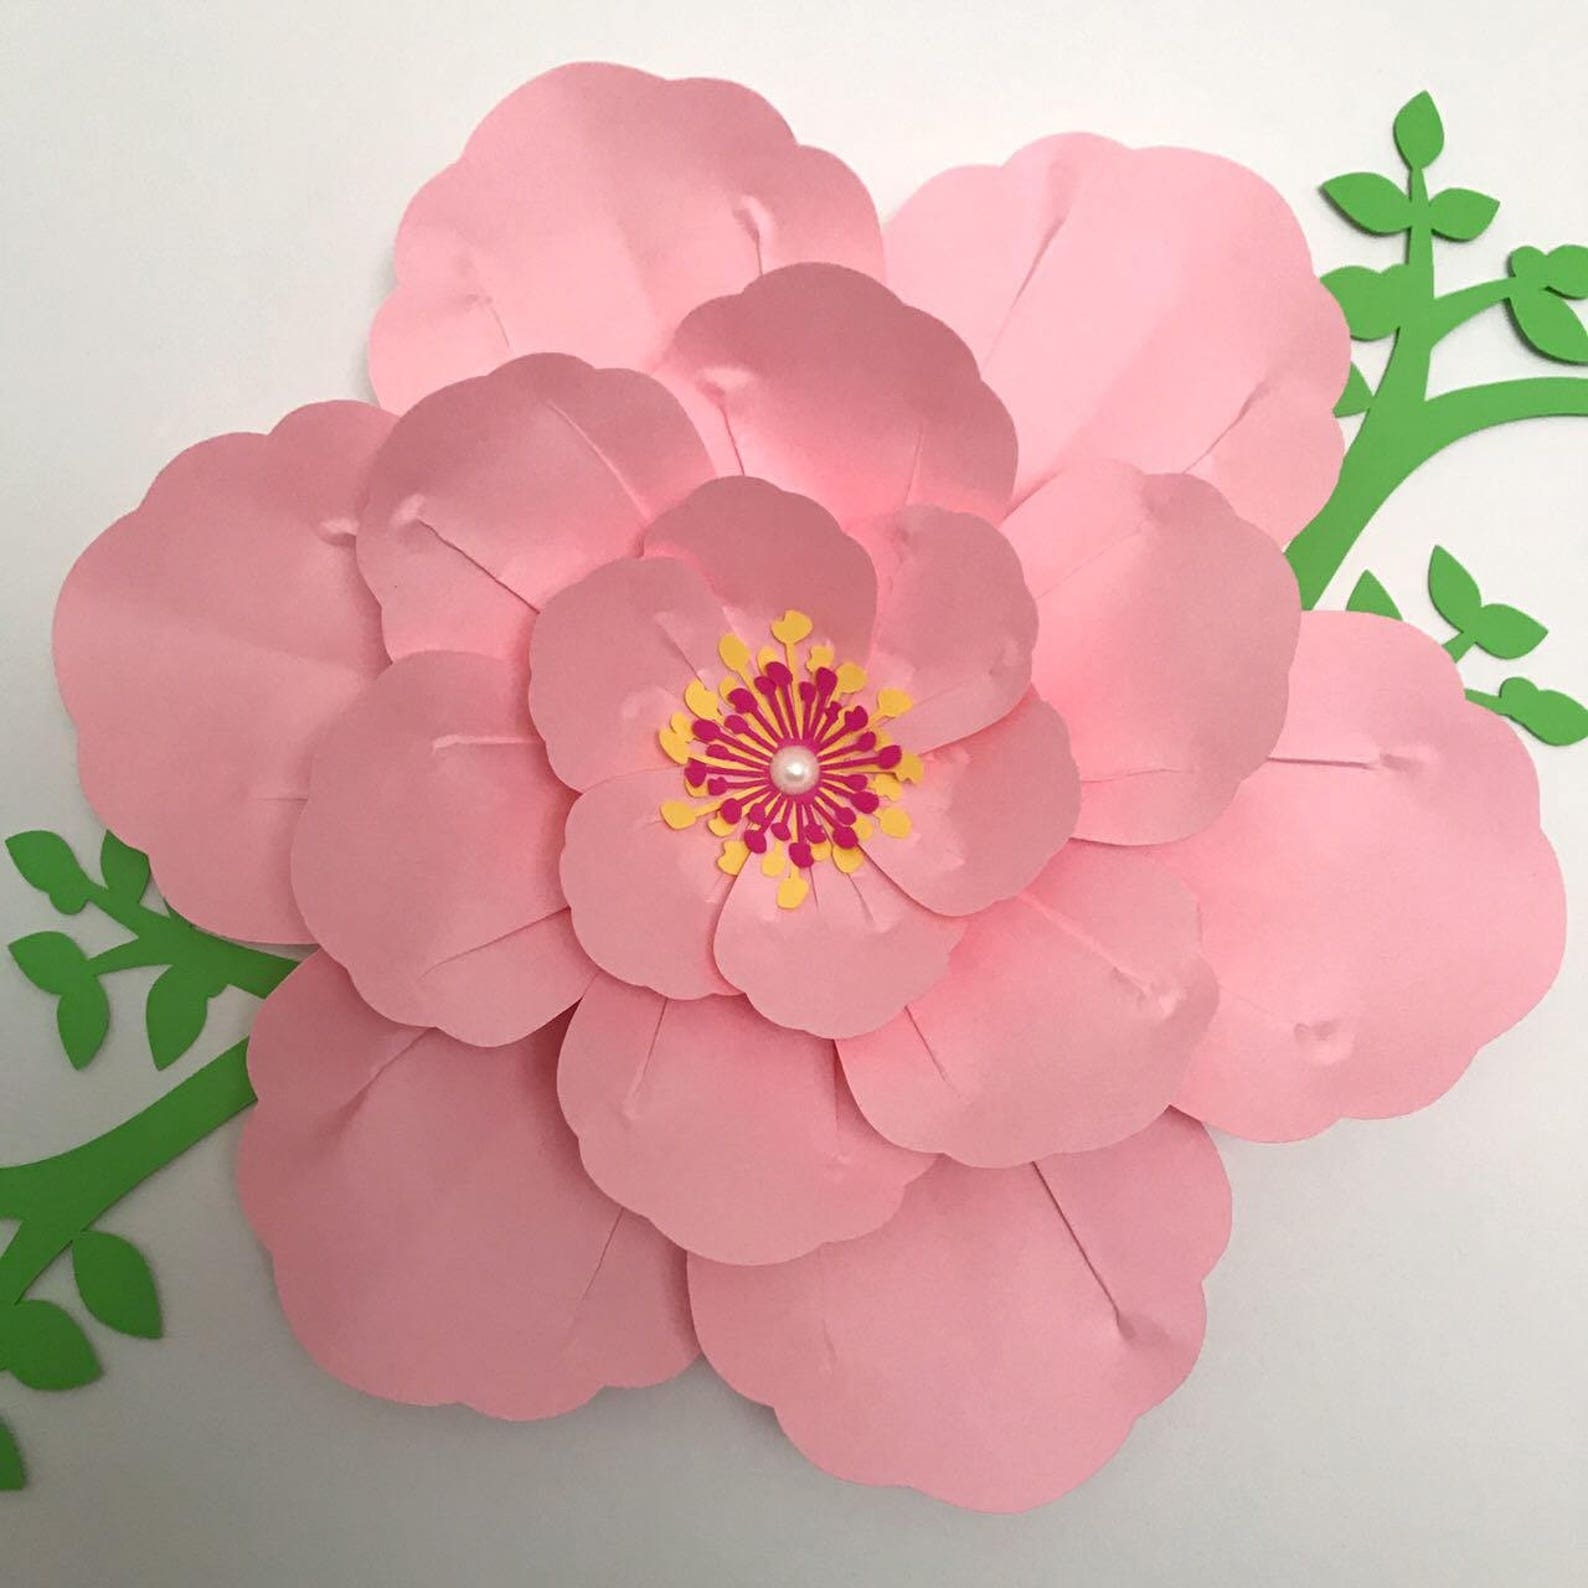 Как сделать красивые бумажные цветы — 9 пошаговых мастер-класса